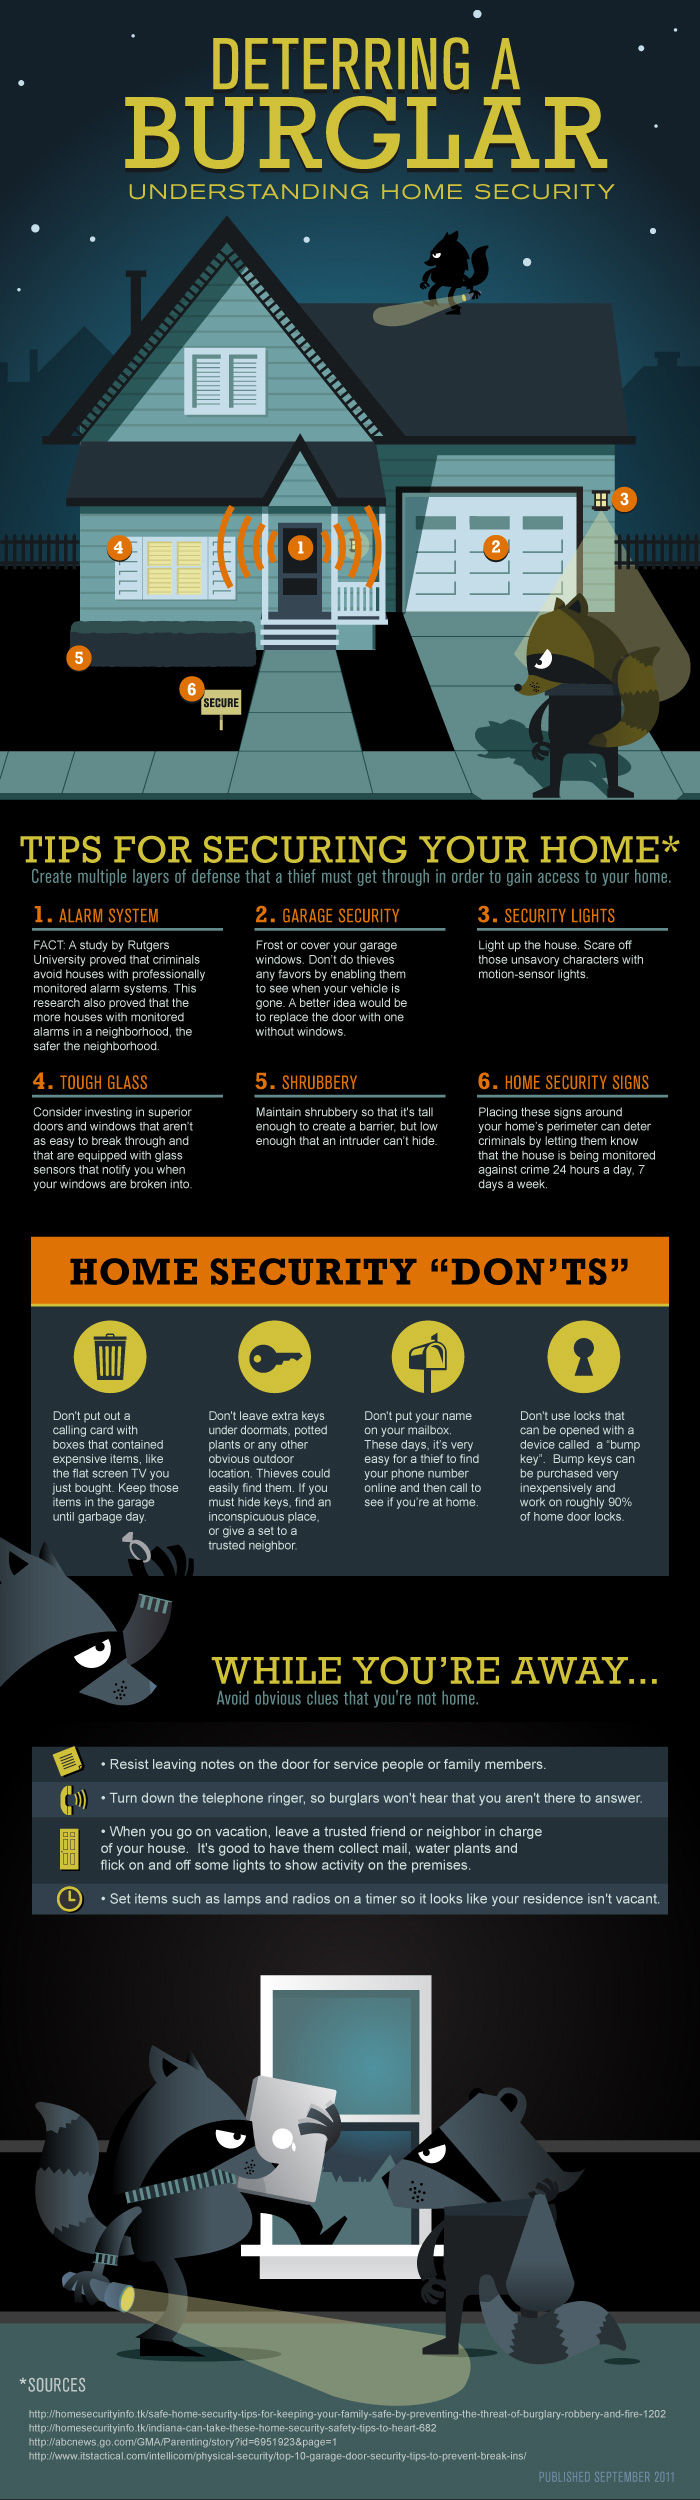 Deterring a Burglar: Understanding Home Security